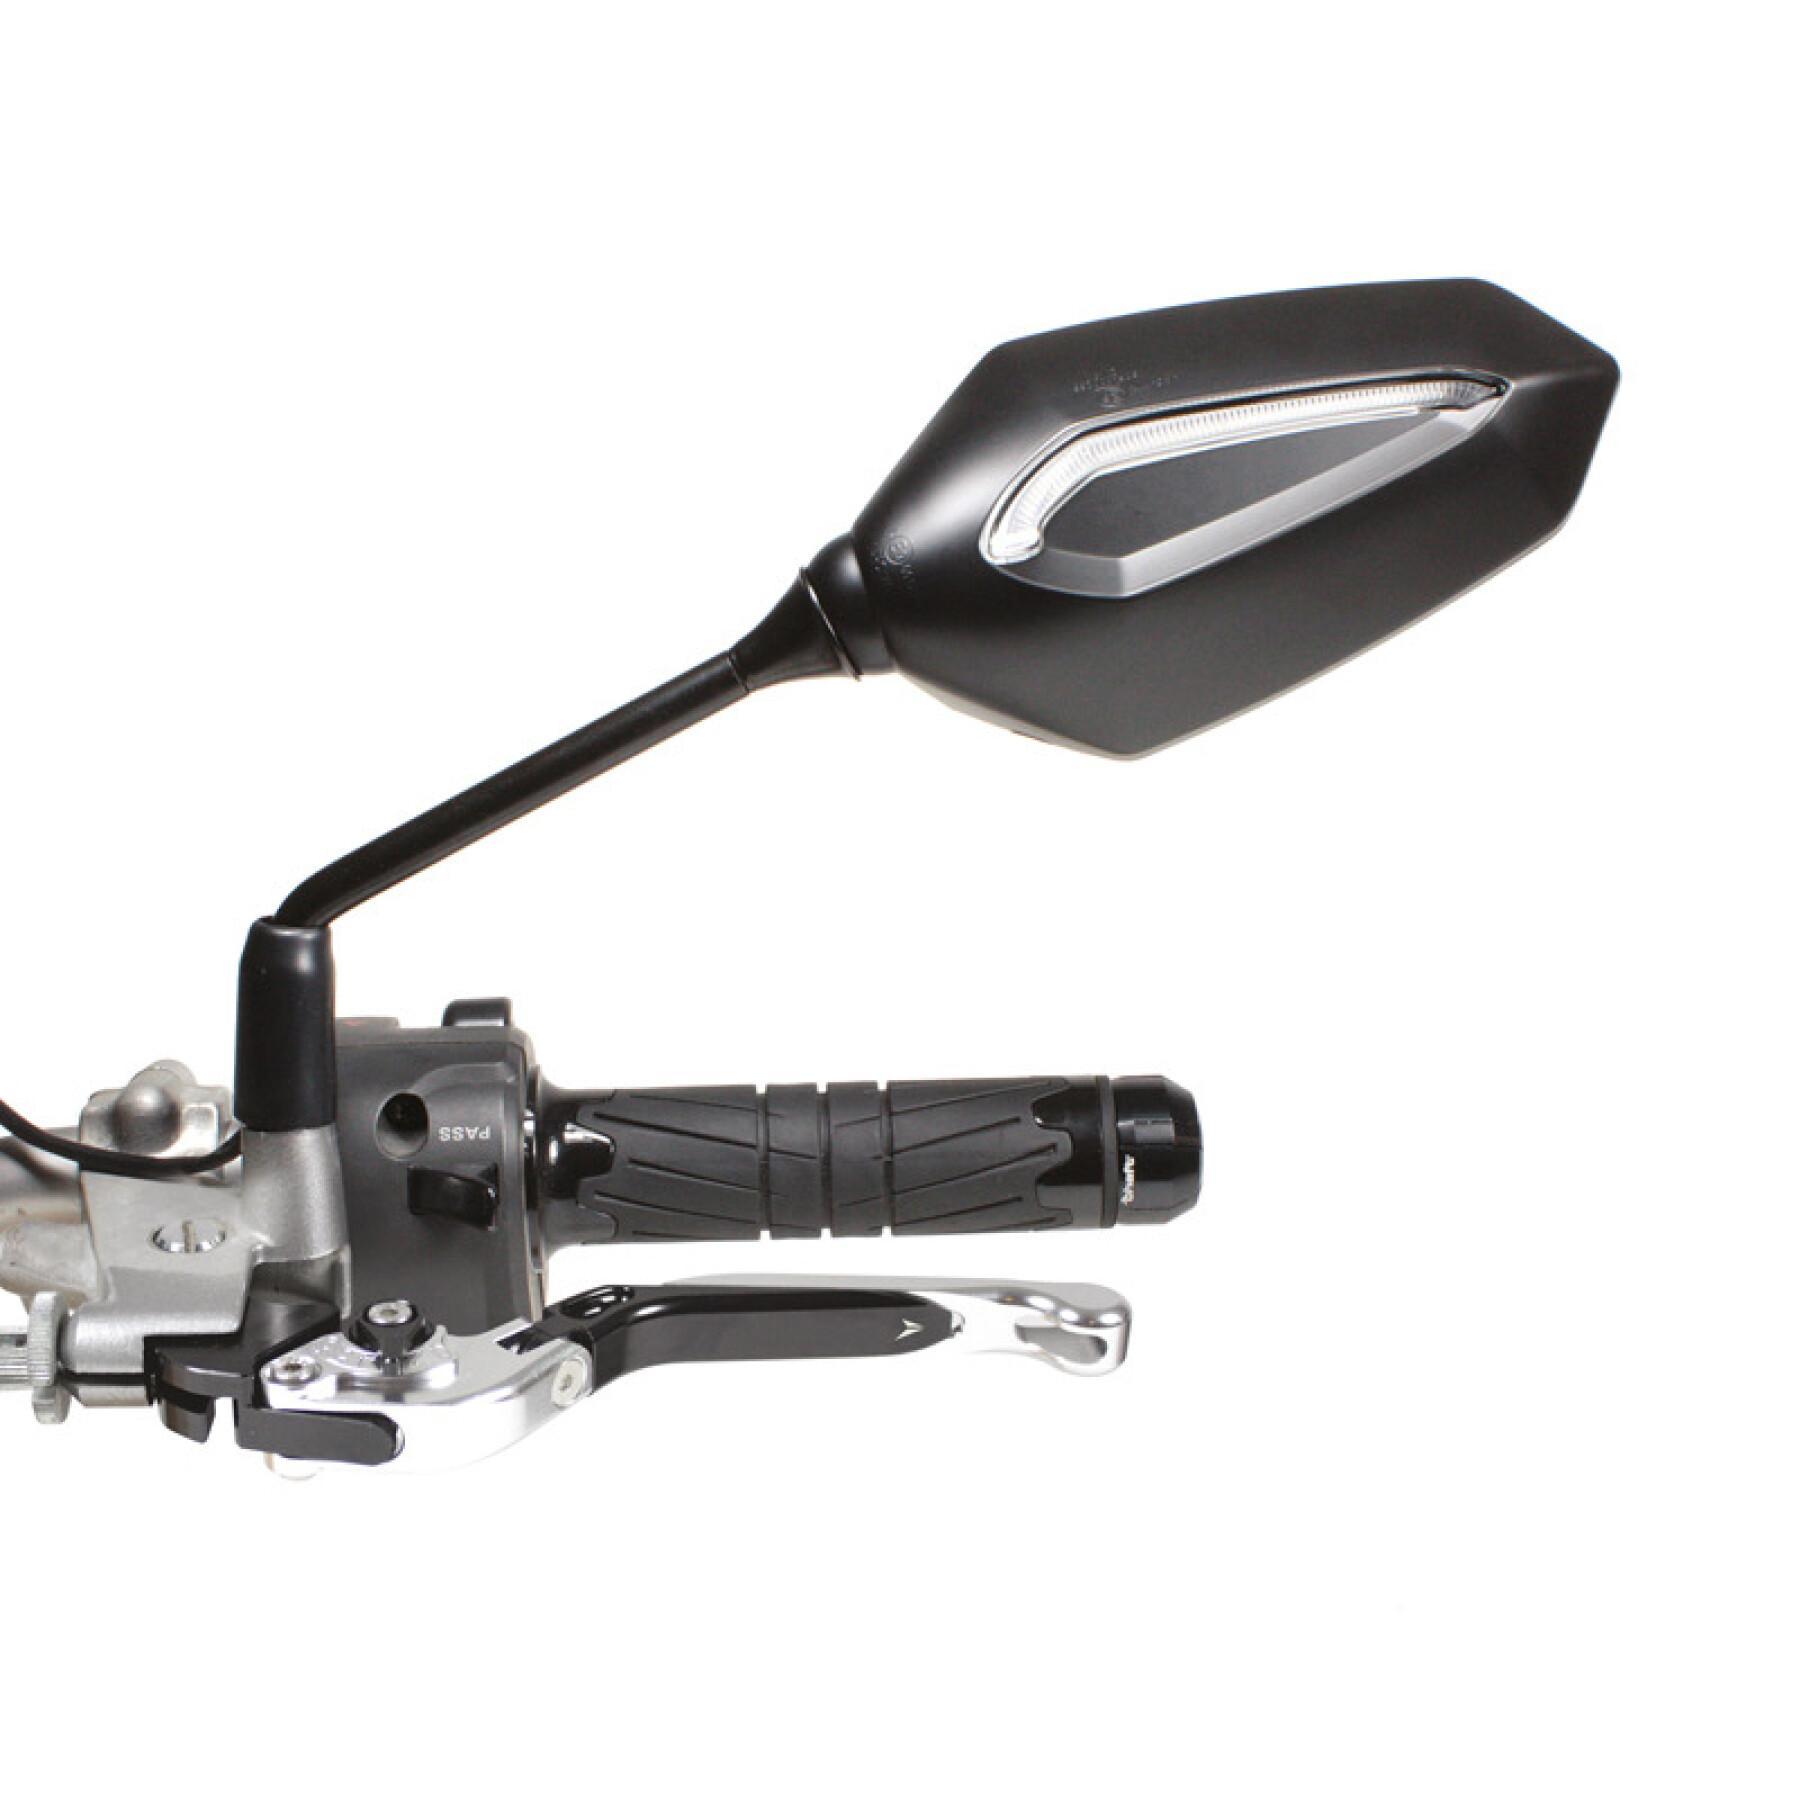 Zugelassener Motorradspiegel mit integrierten Blinkern linke Sicht Chaft